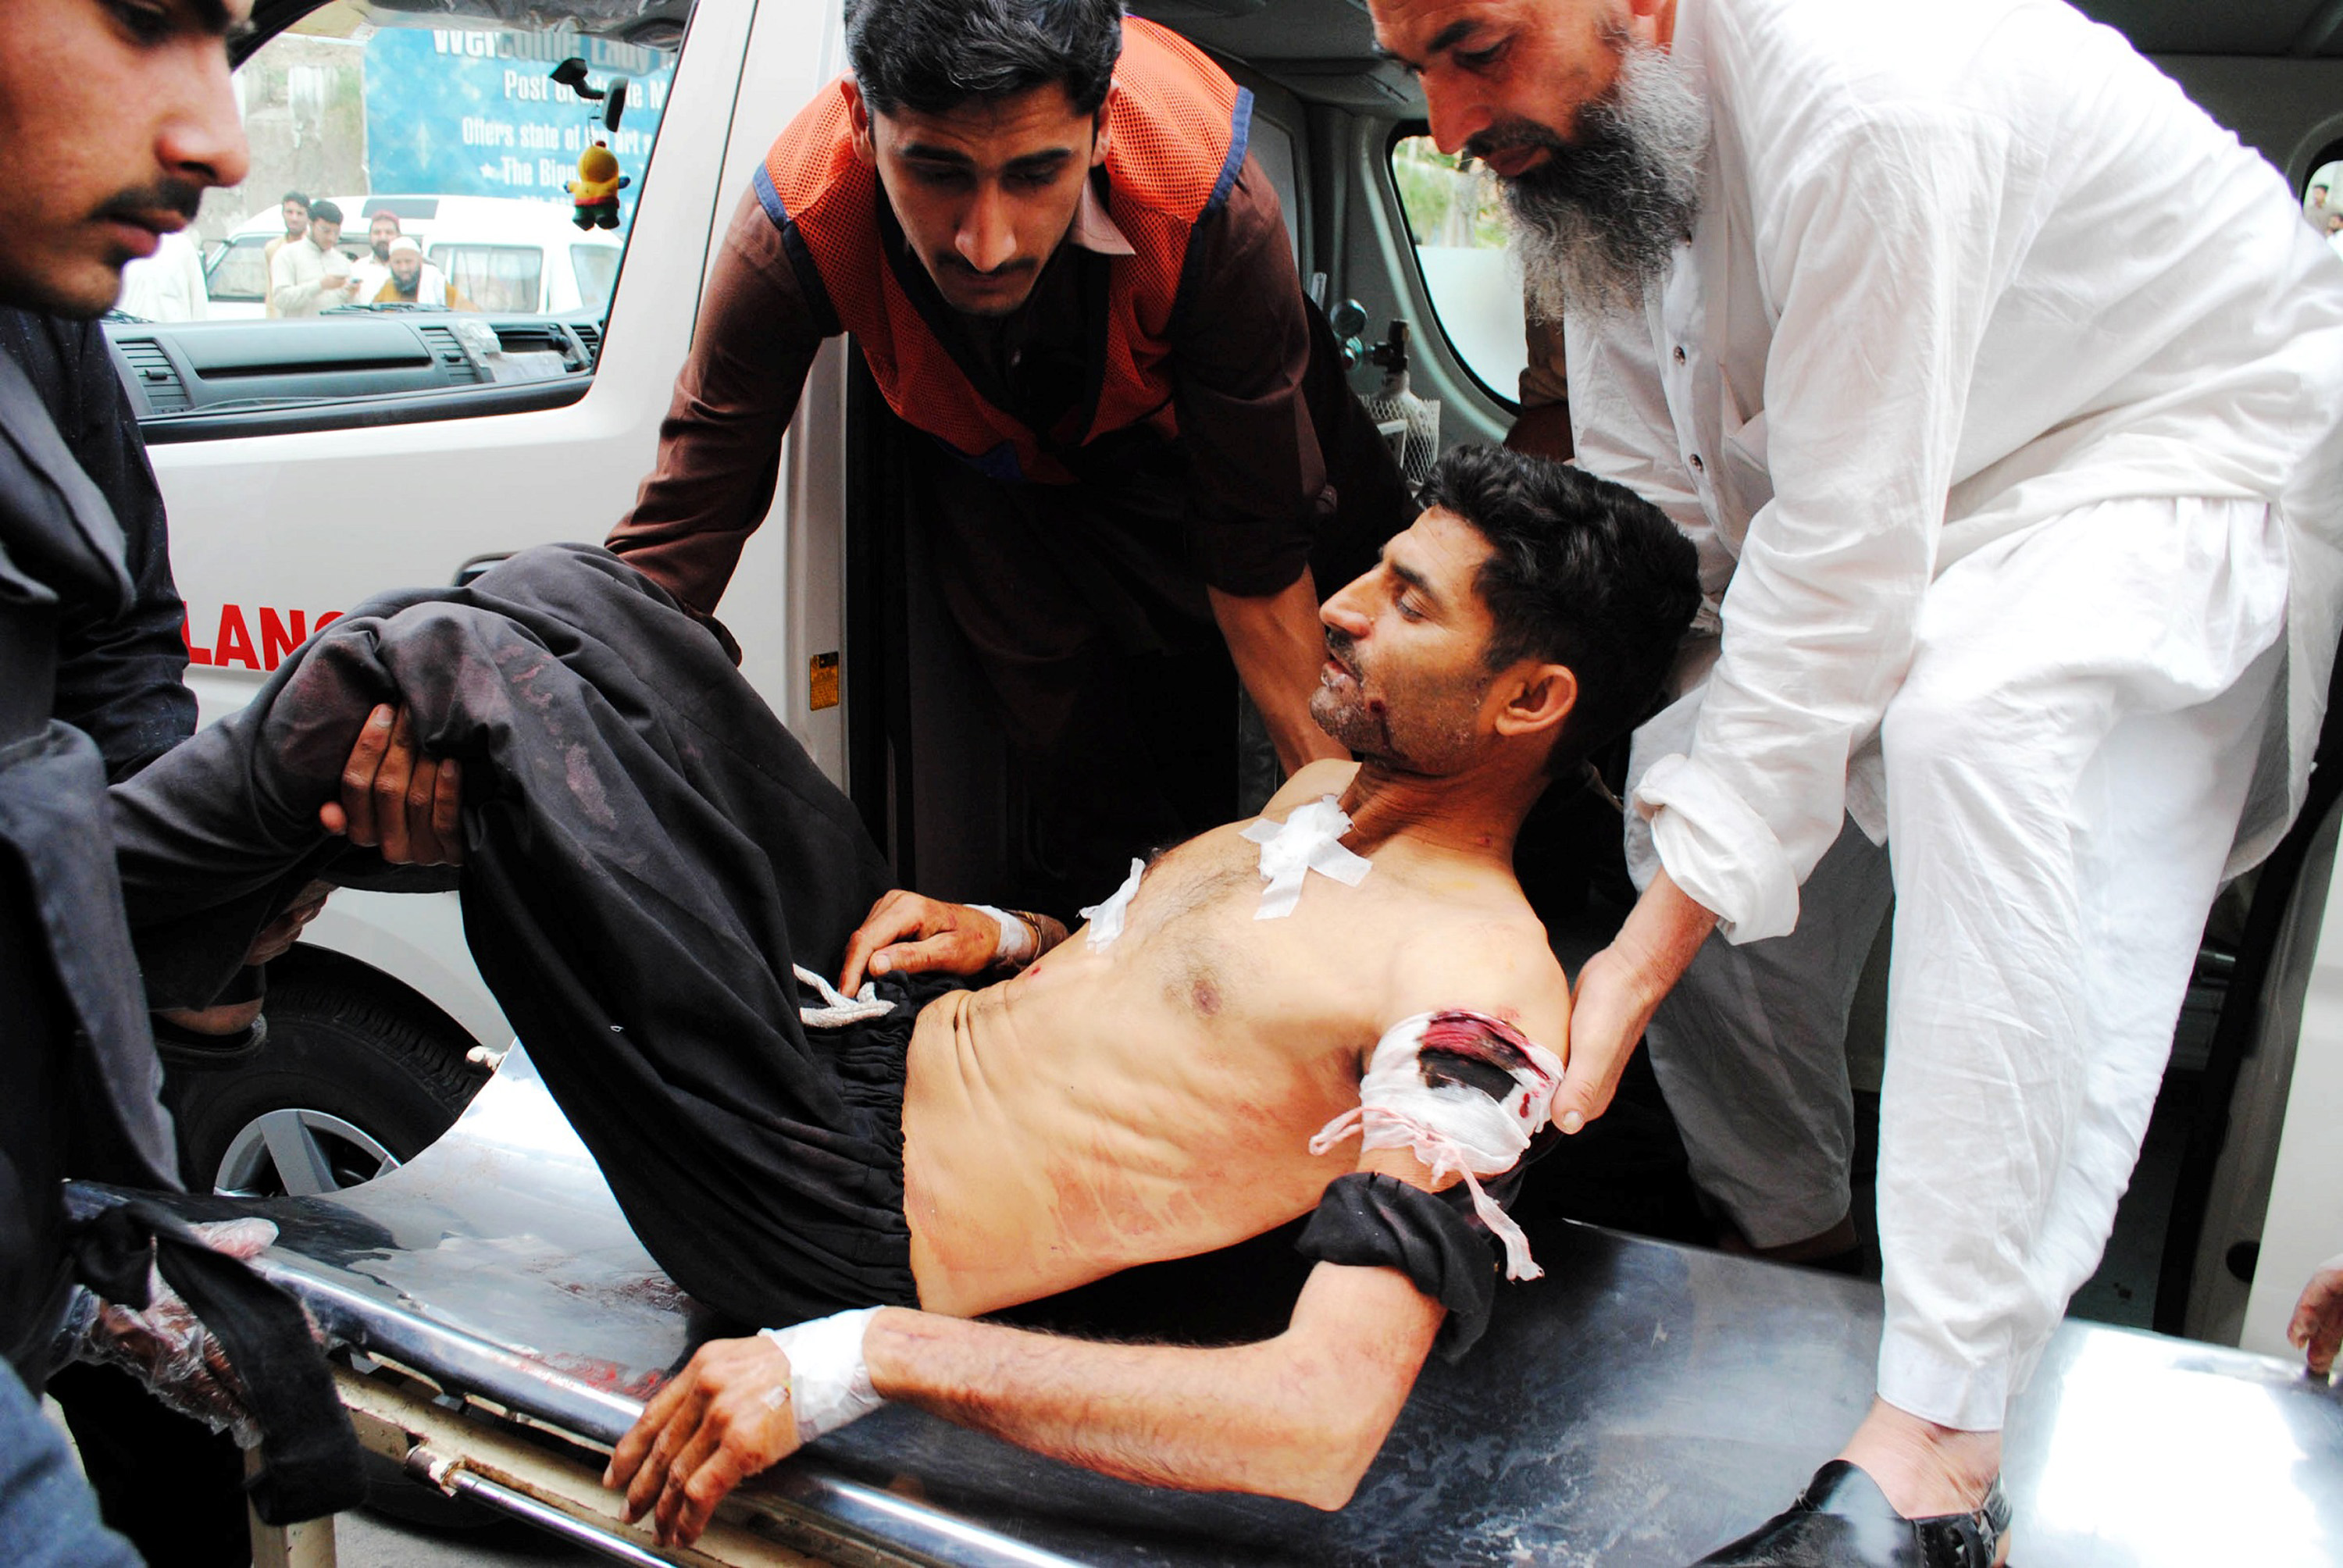 En man som skadades i attentatet förs till sjukhuset i Peshawar.